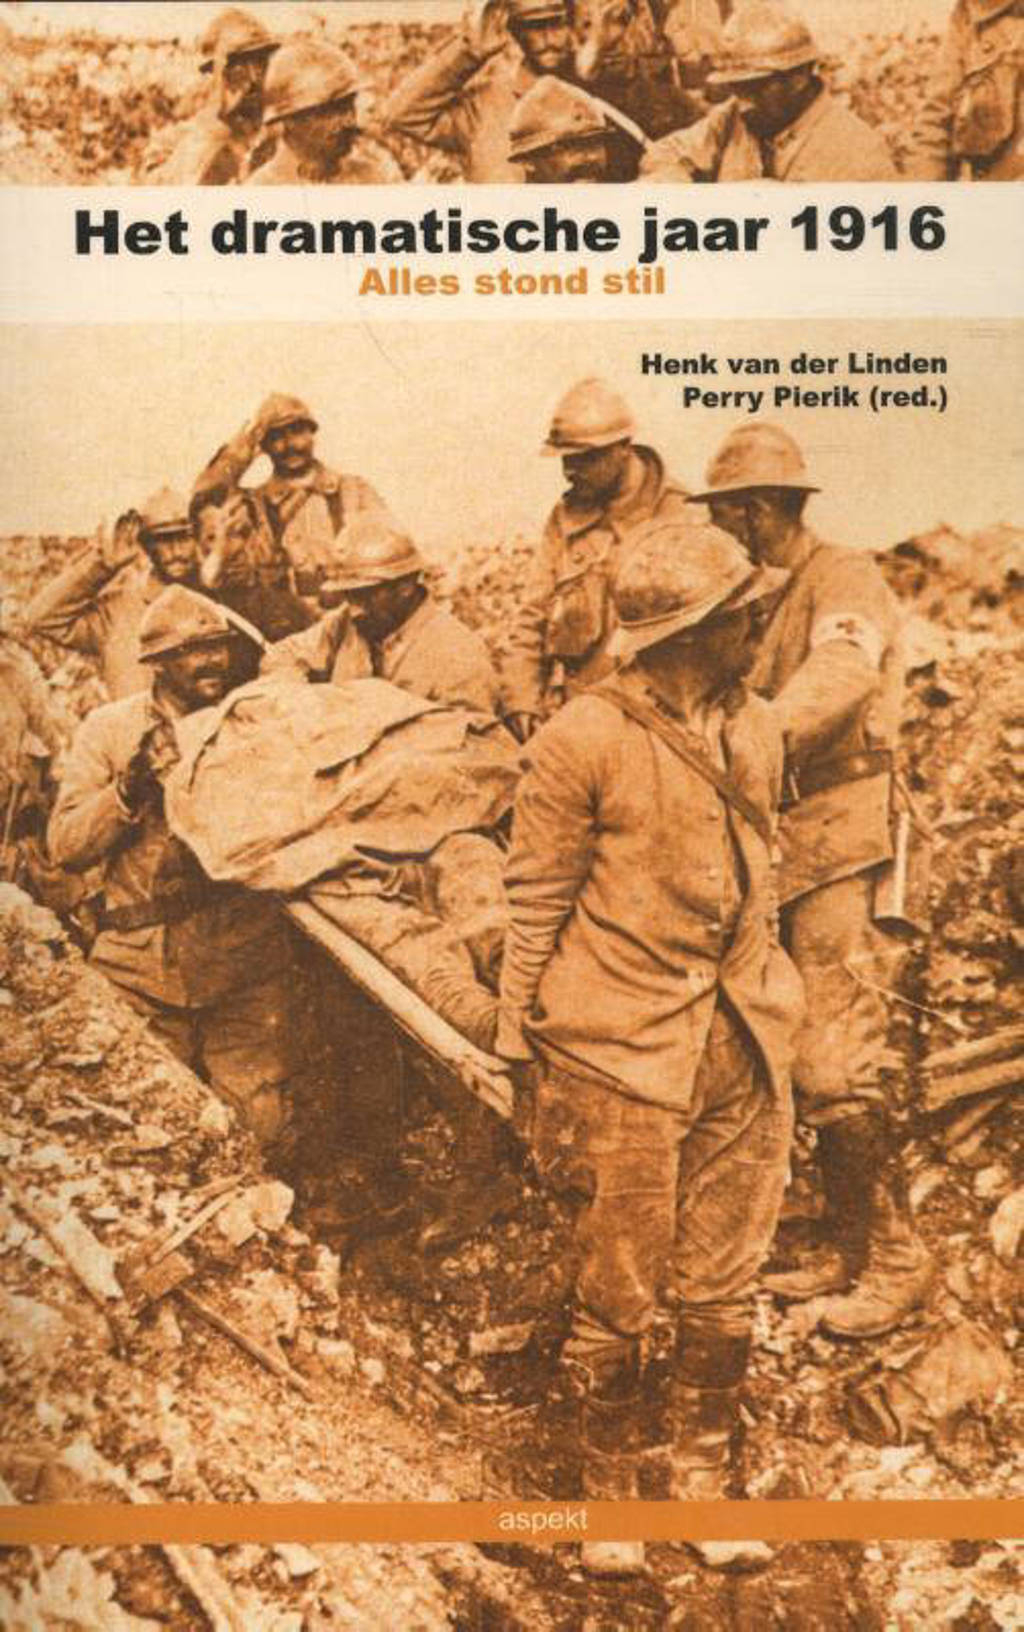 Het dramatische jaar 1916 - Henk van der Linden en Perry Pierik